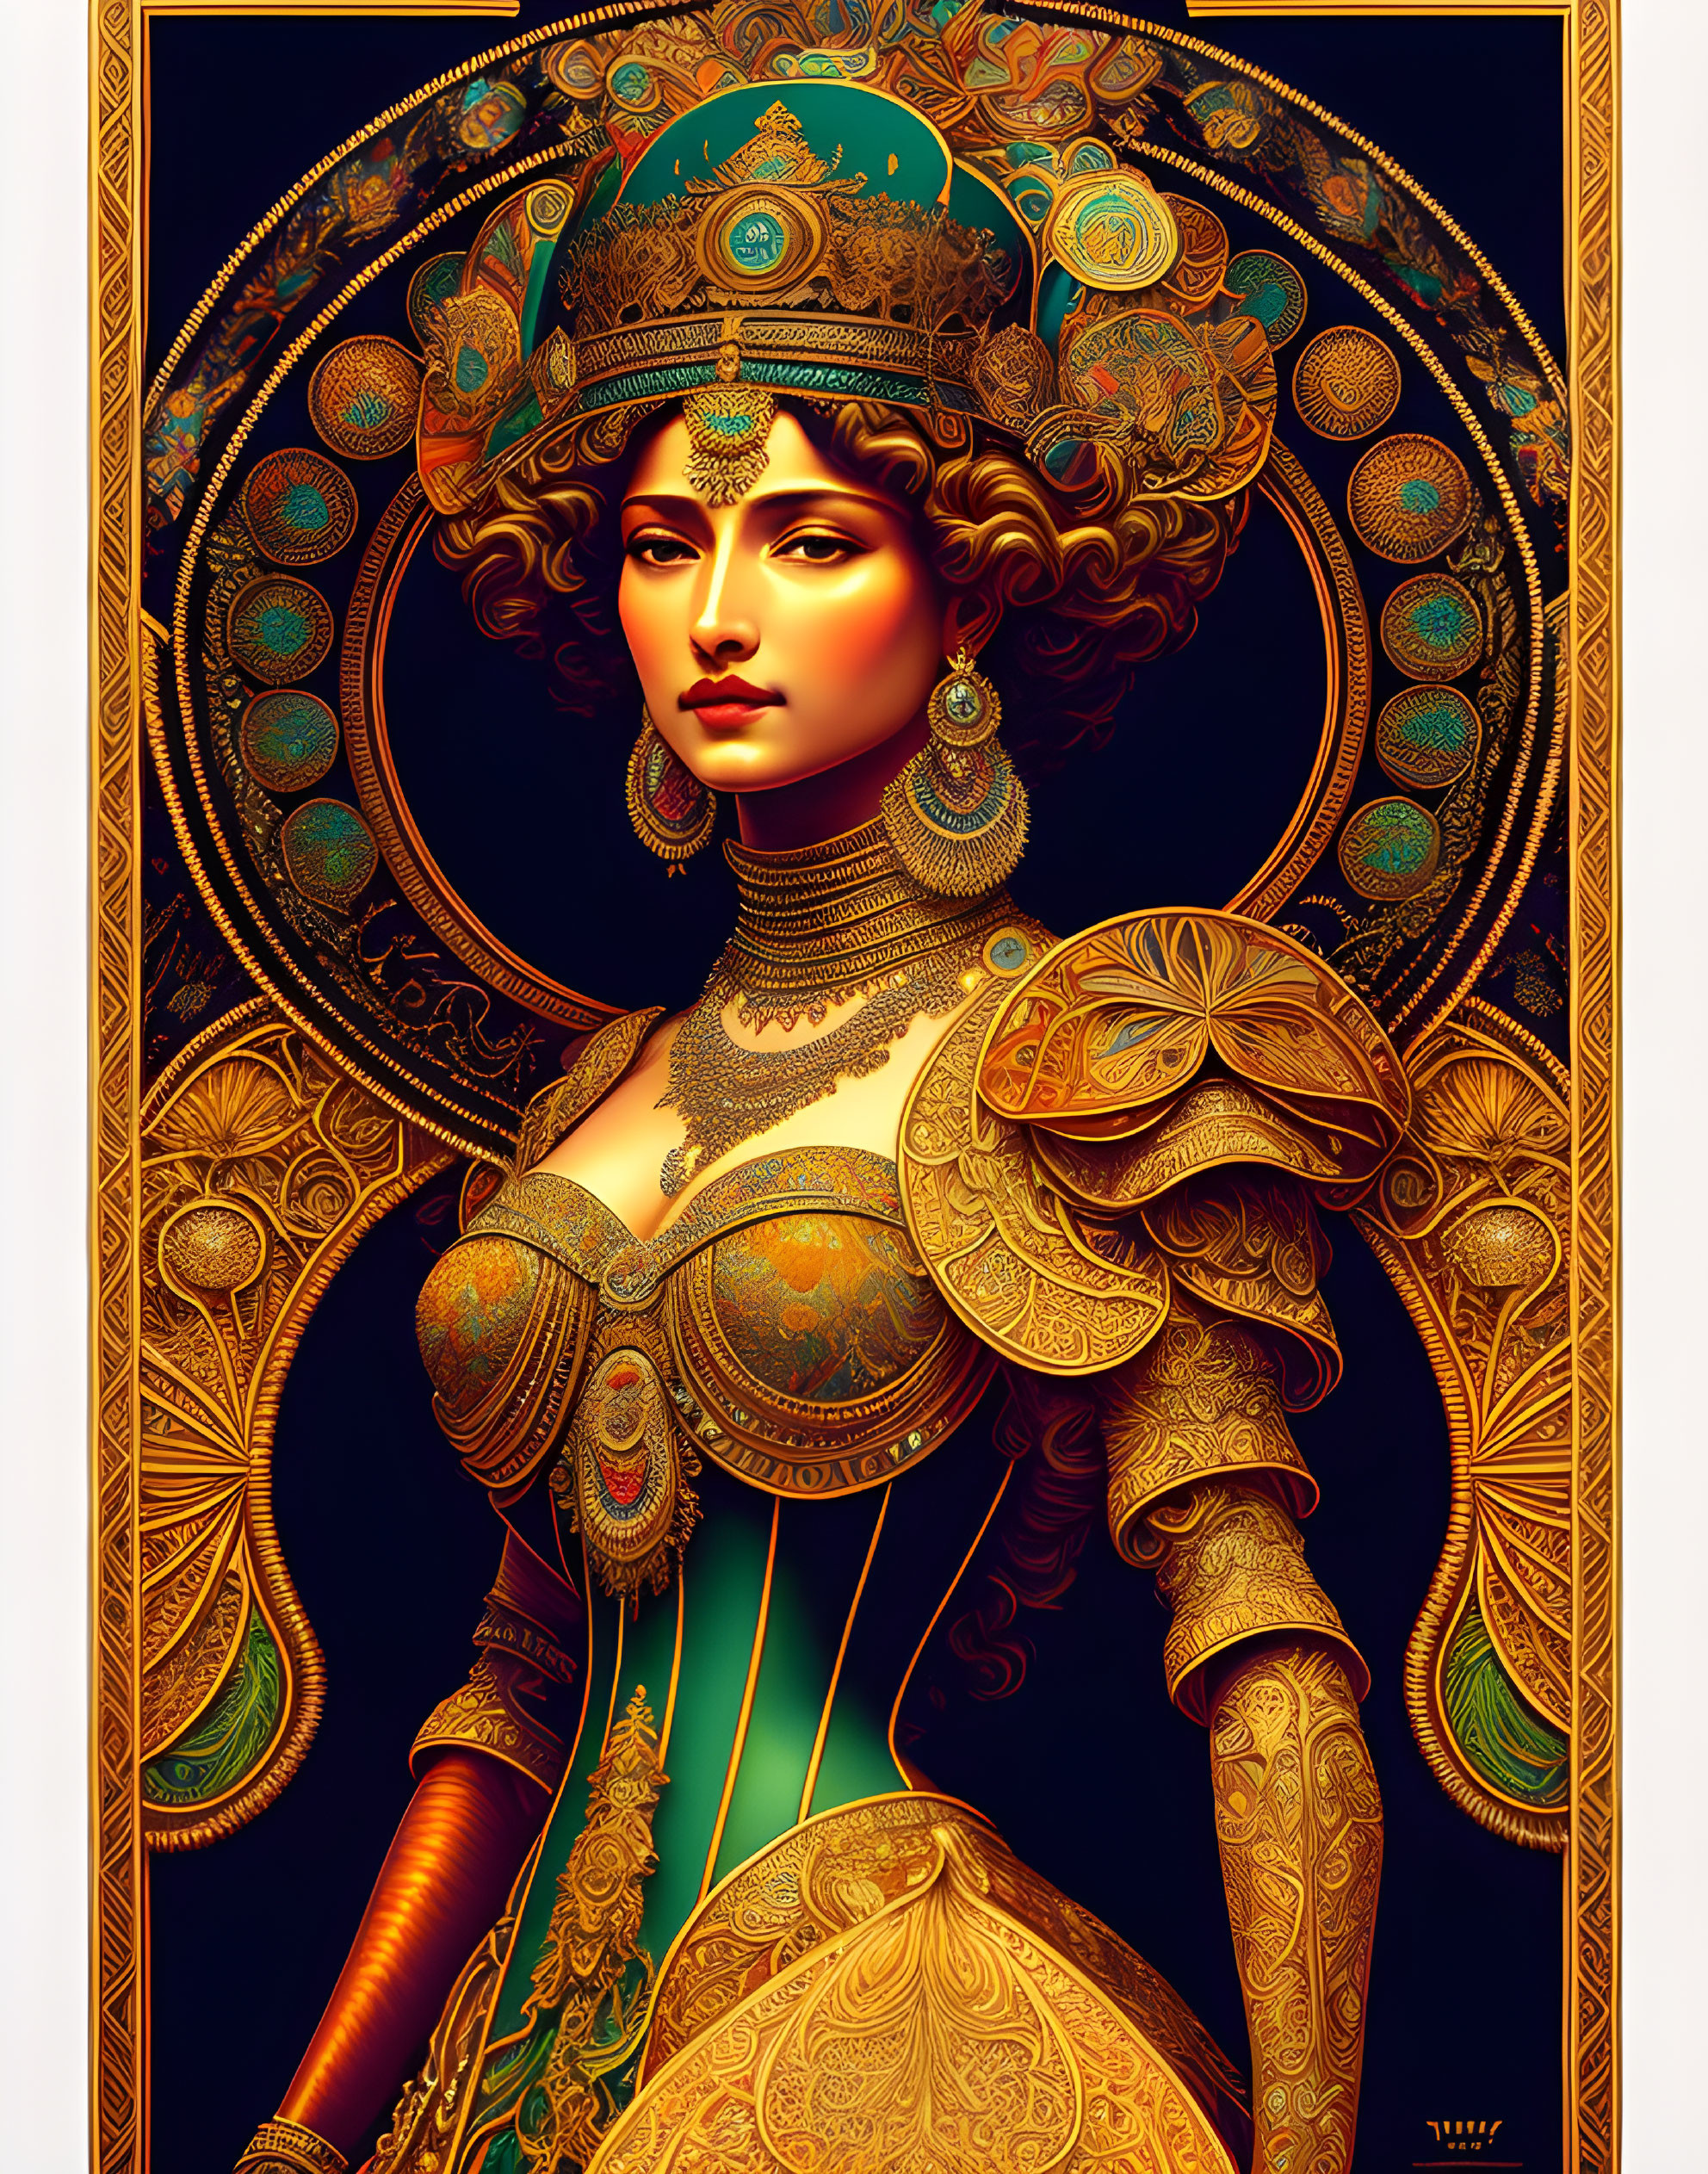 Queen Titania